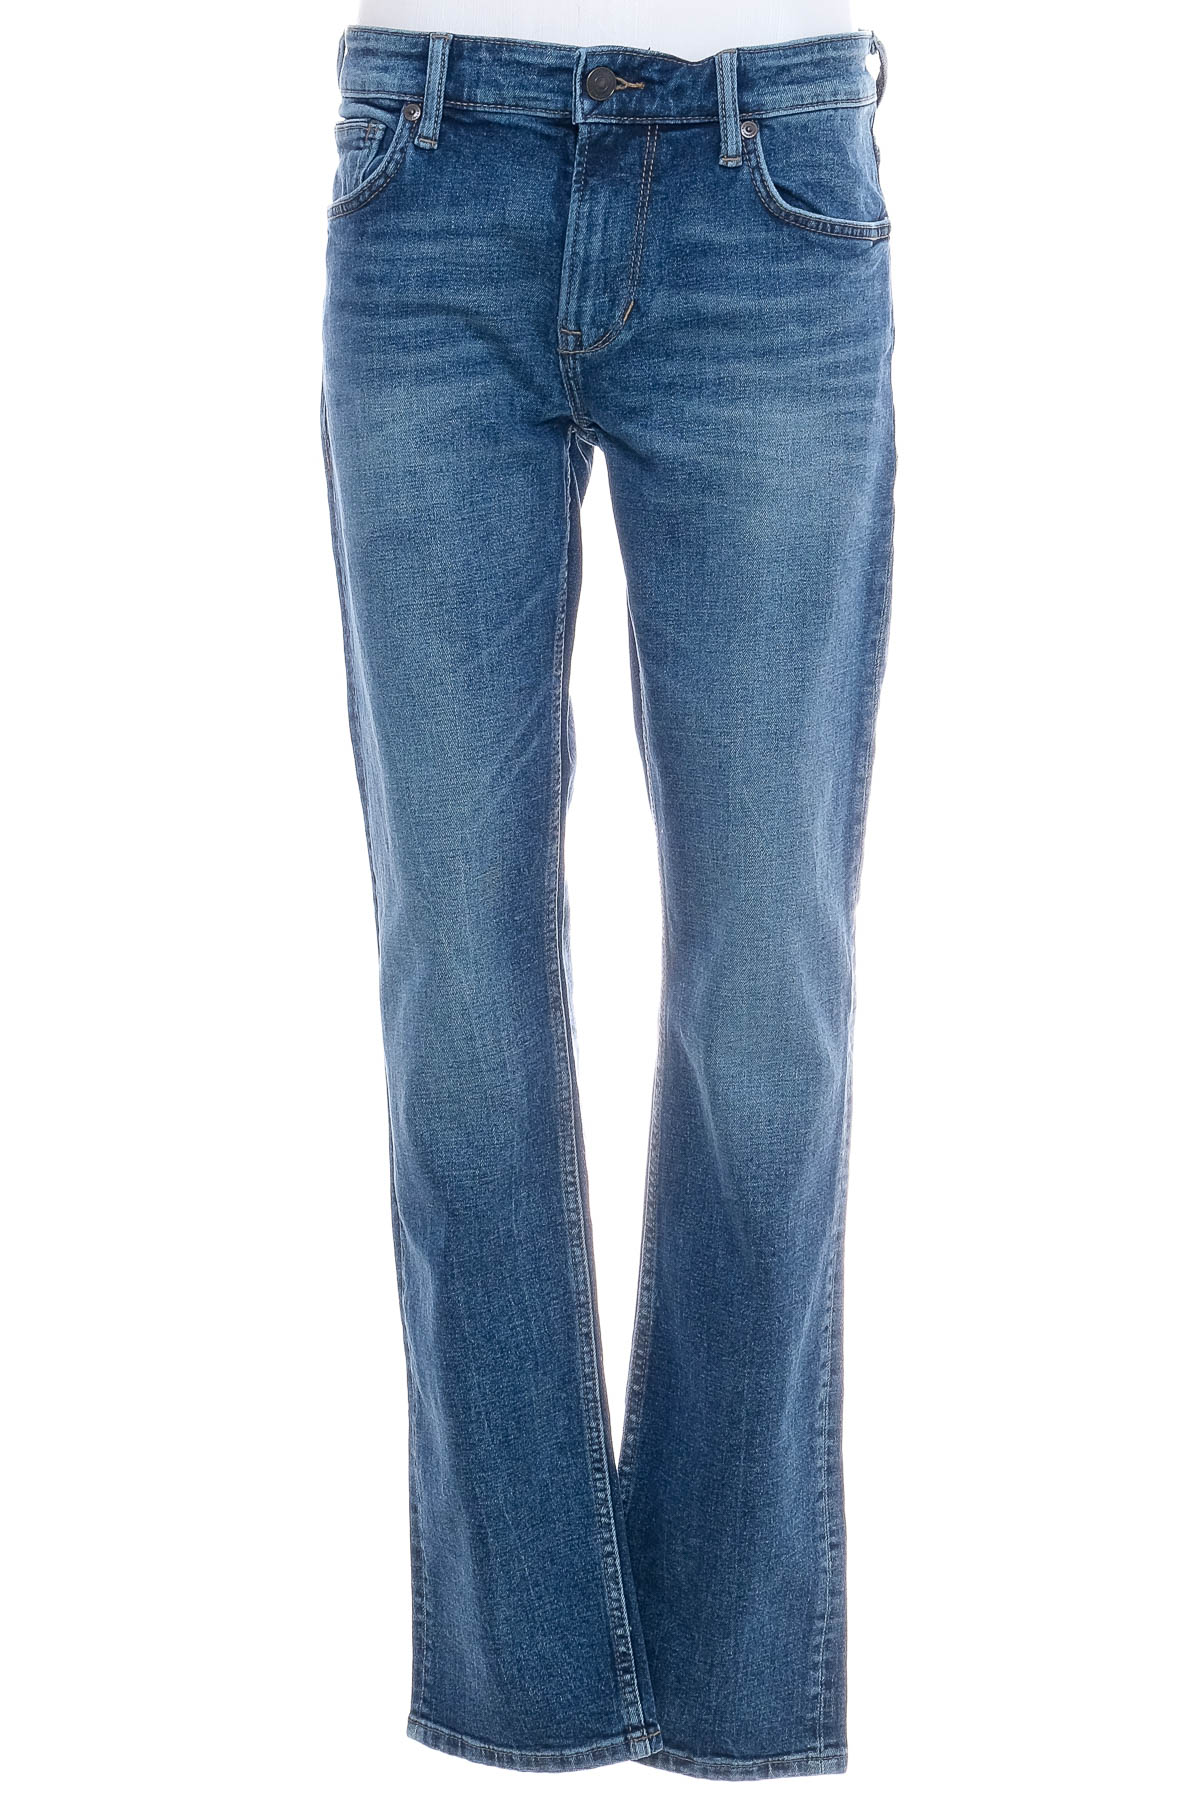 Jeans pentru bărbăți - C&A - 0